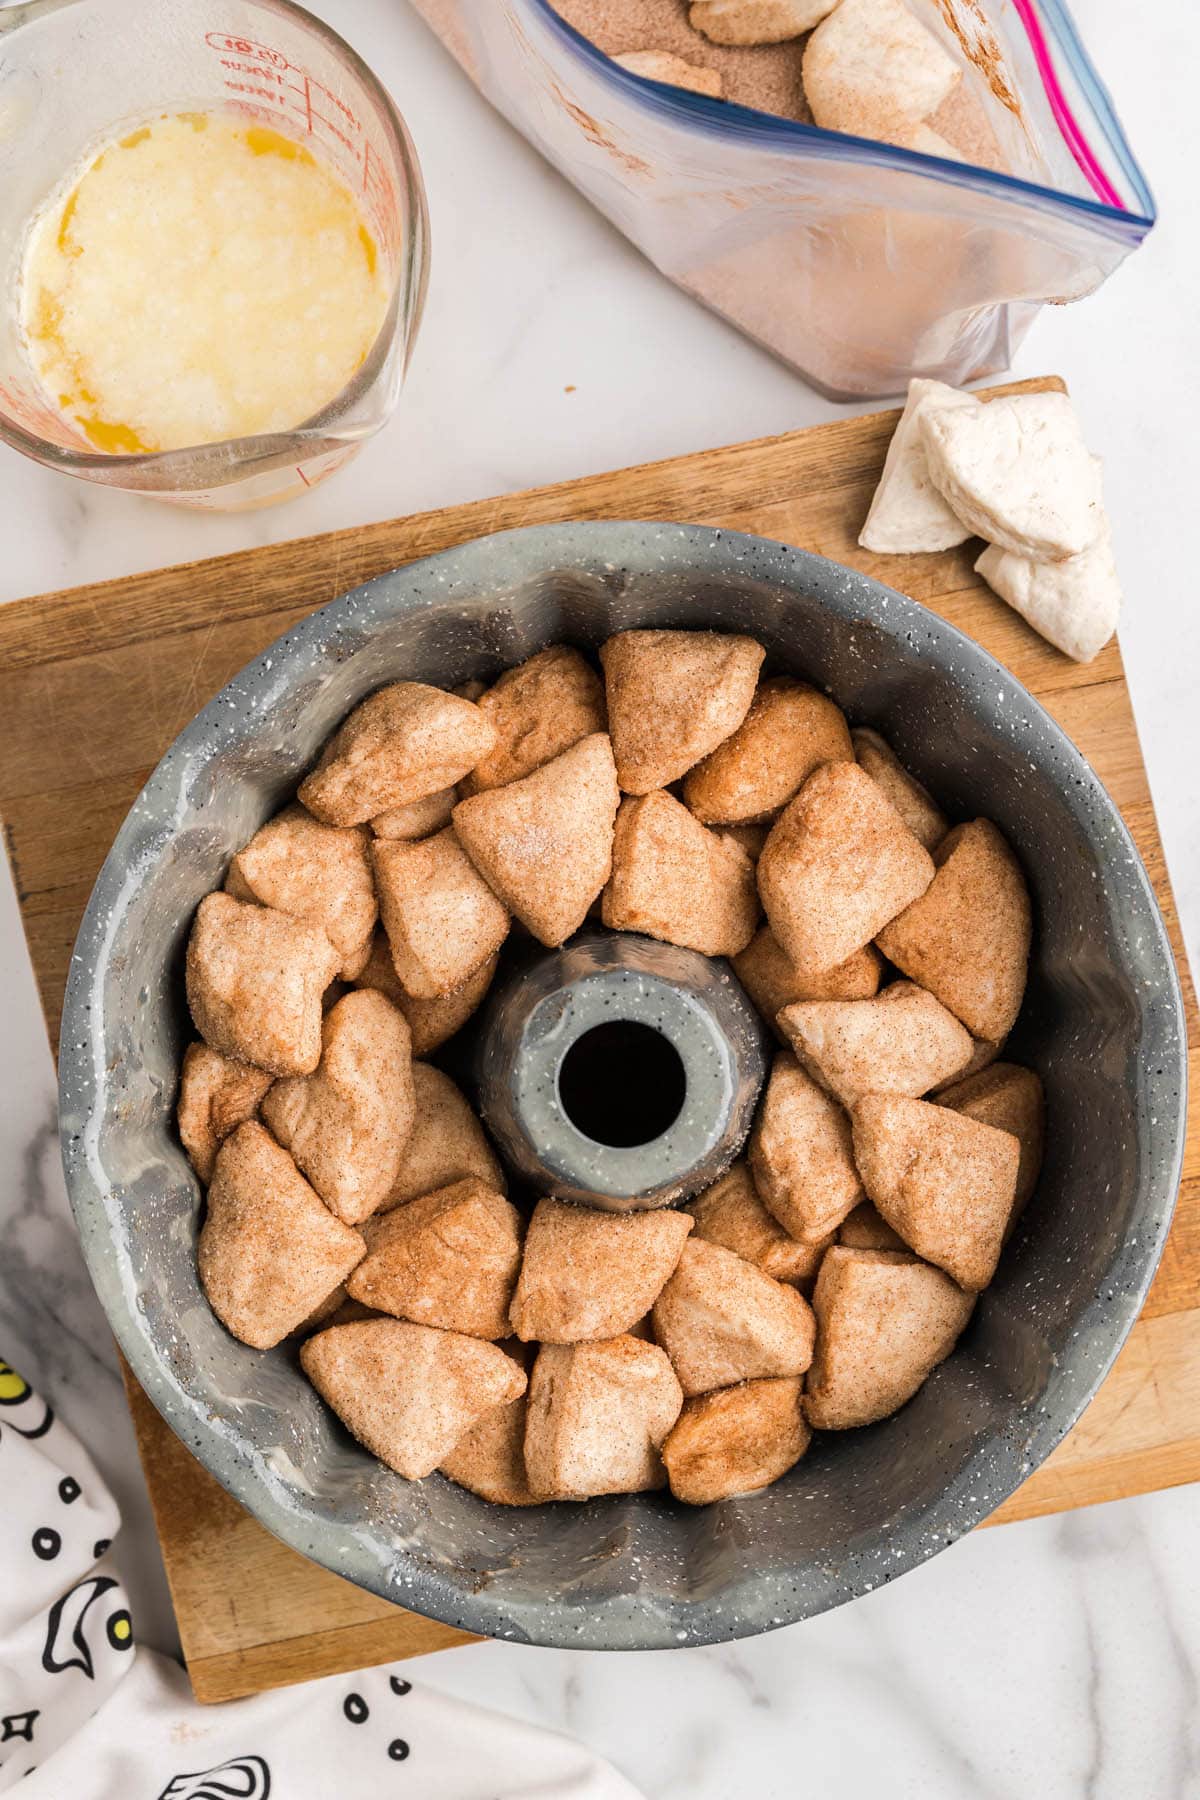 Place biscuit pieces into bundt pan.